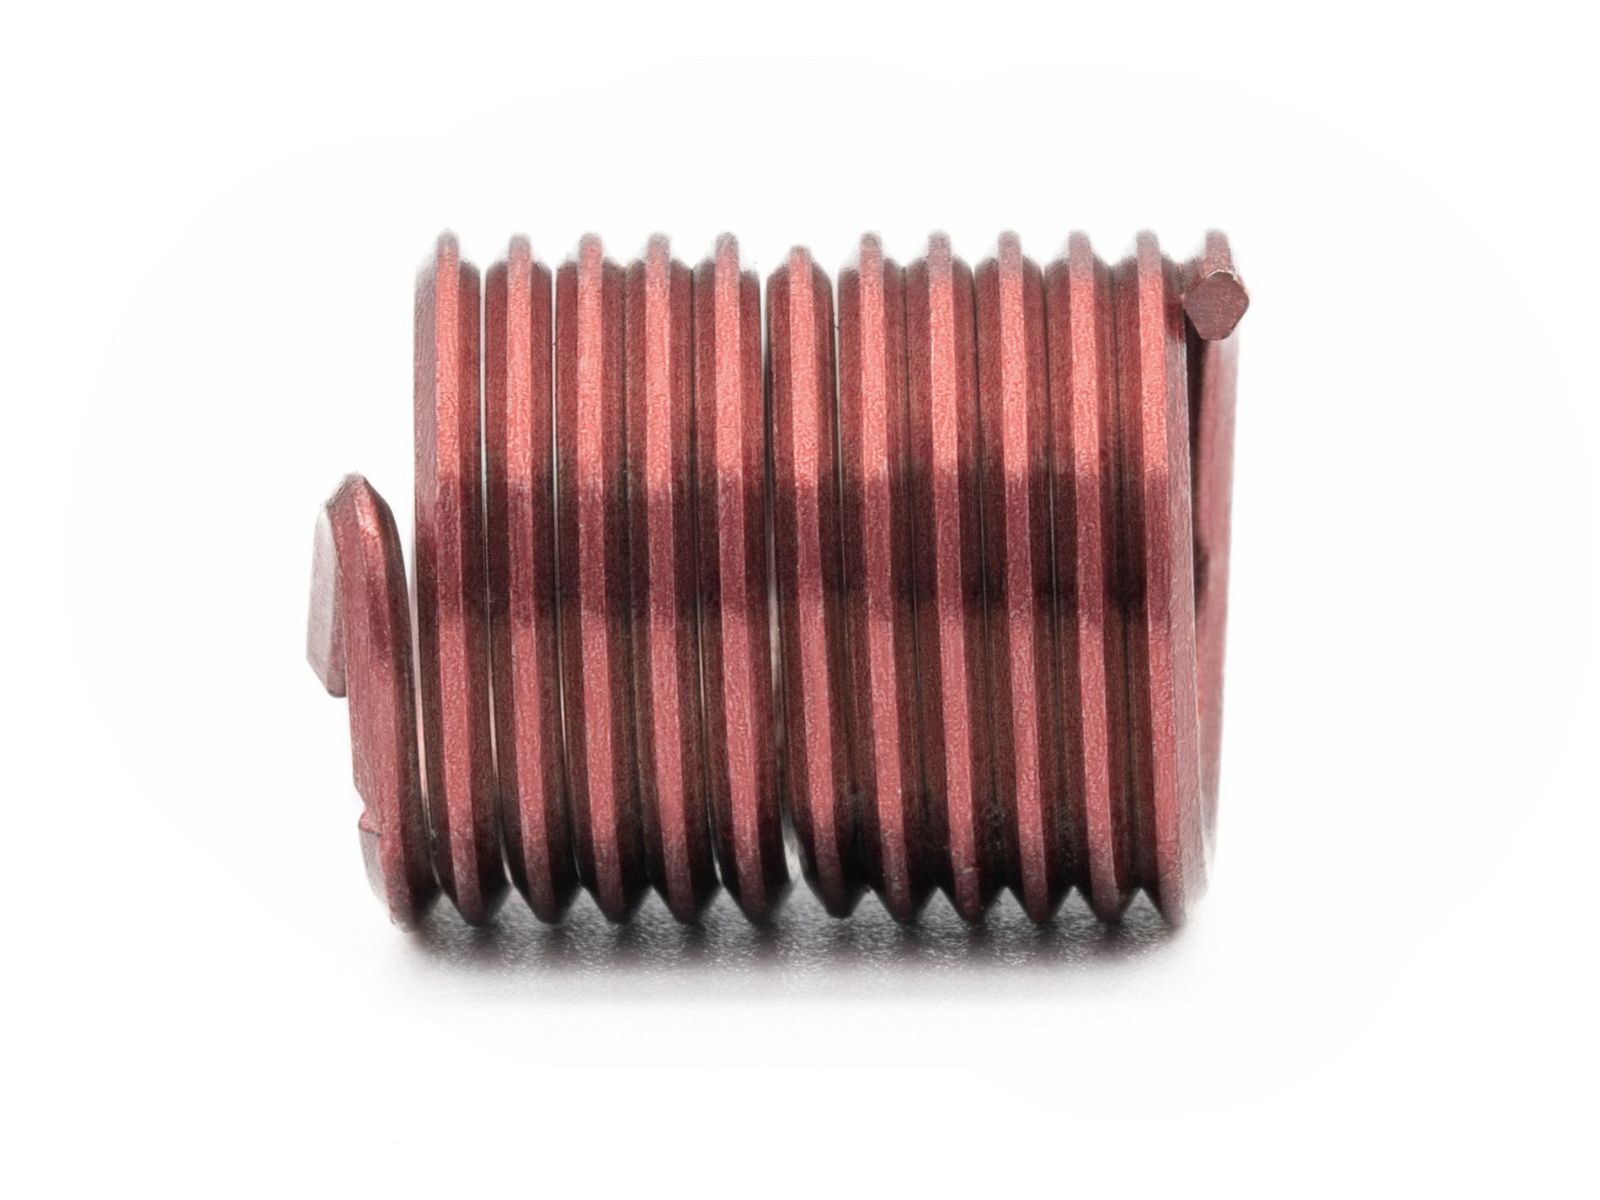 BaerCoil Wire Thread Inserts M 2 x 0.4 - 2.0 D (4 mm) - screw grip (screw locking) - 100 pcs.